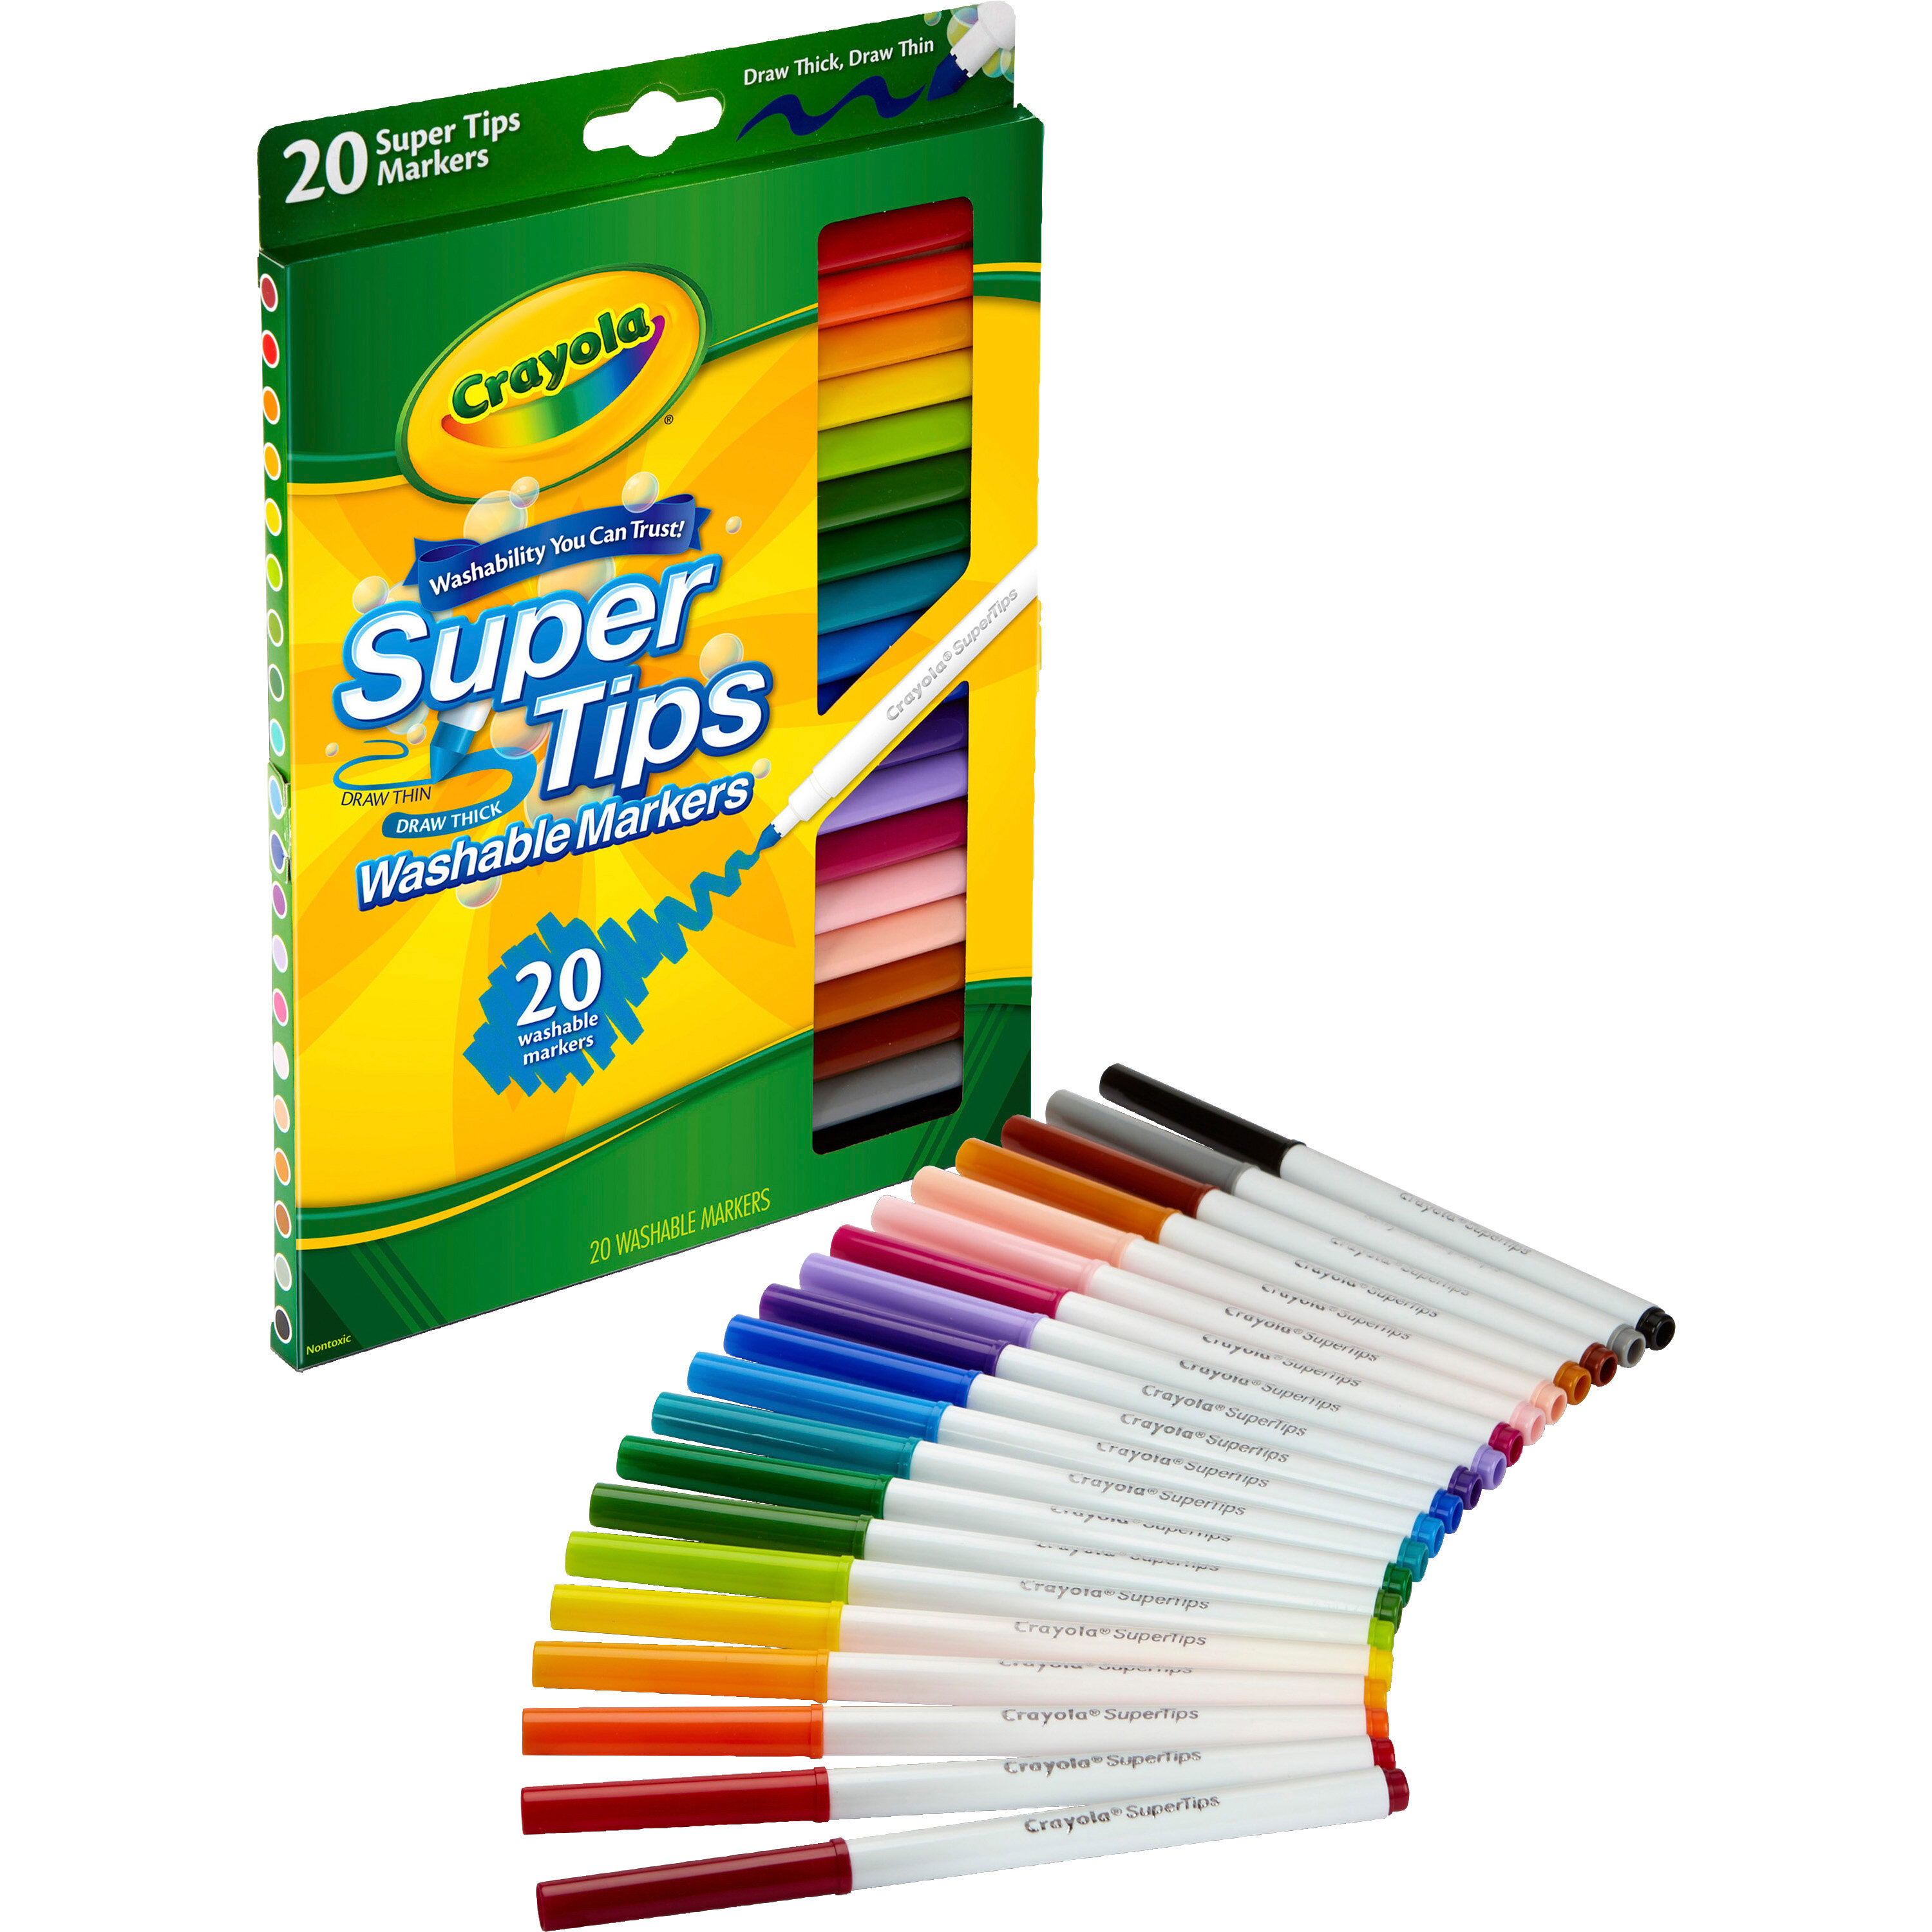 Crayola Washable Brush Pen Set - FLAX & design